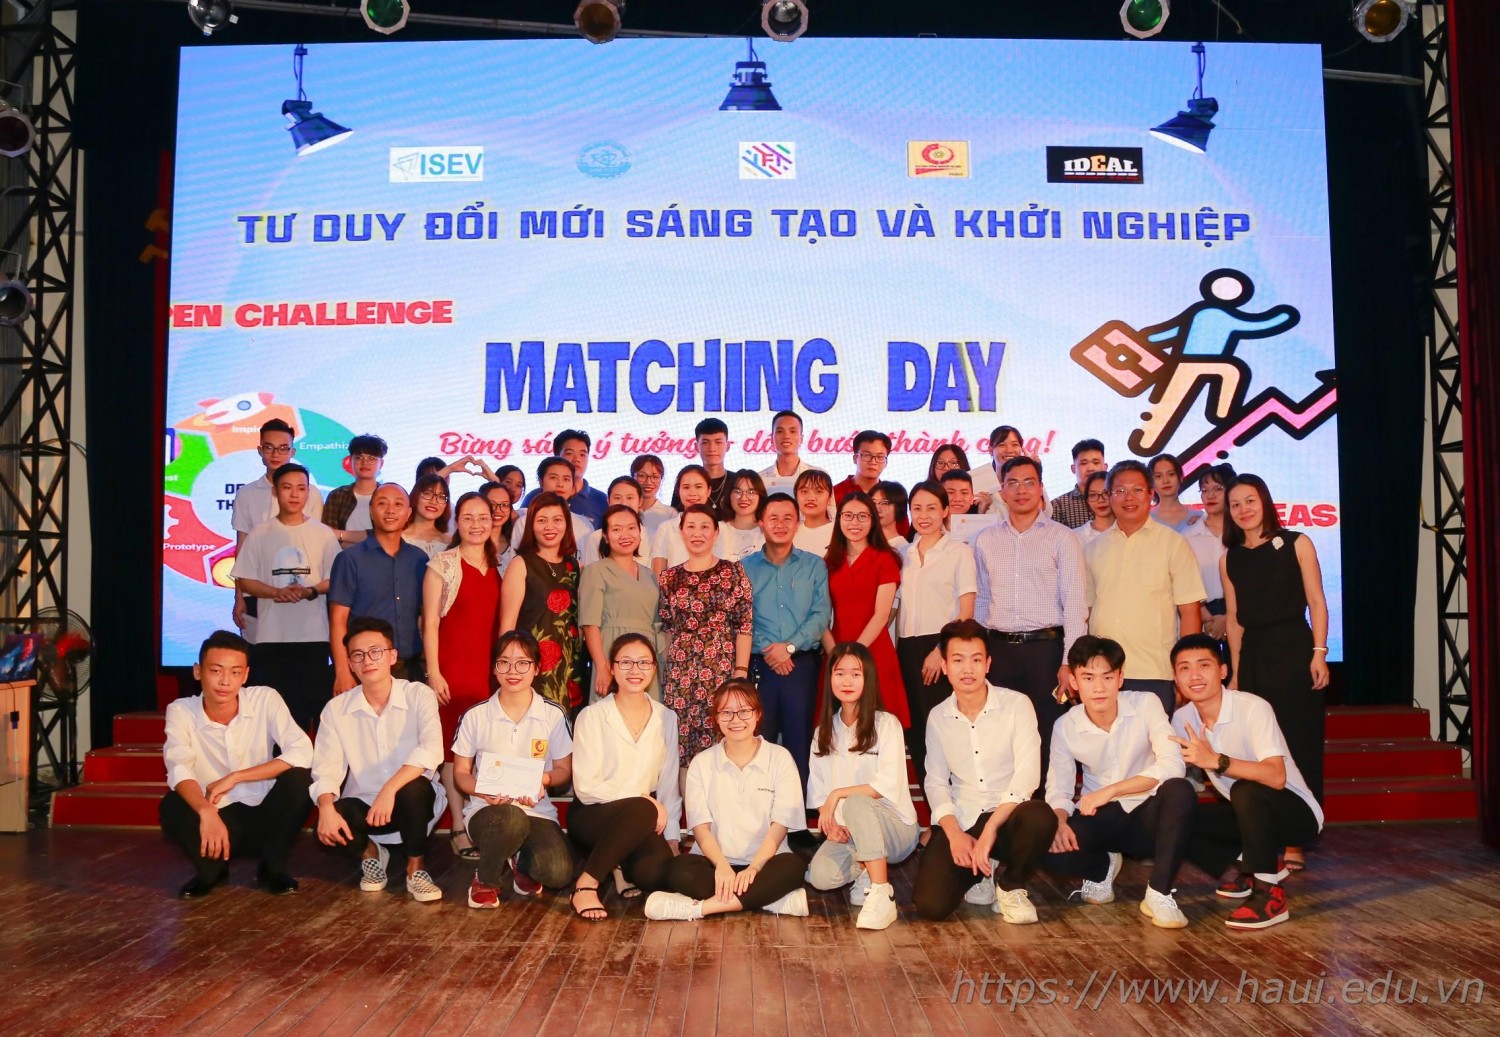 Hội nghị Matching Day có sự góp mặt của nhiều đội thi và các chuyên gia uy tín